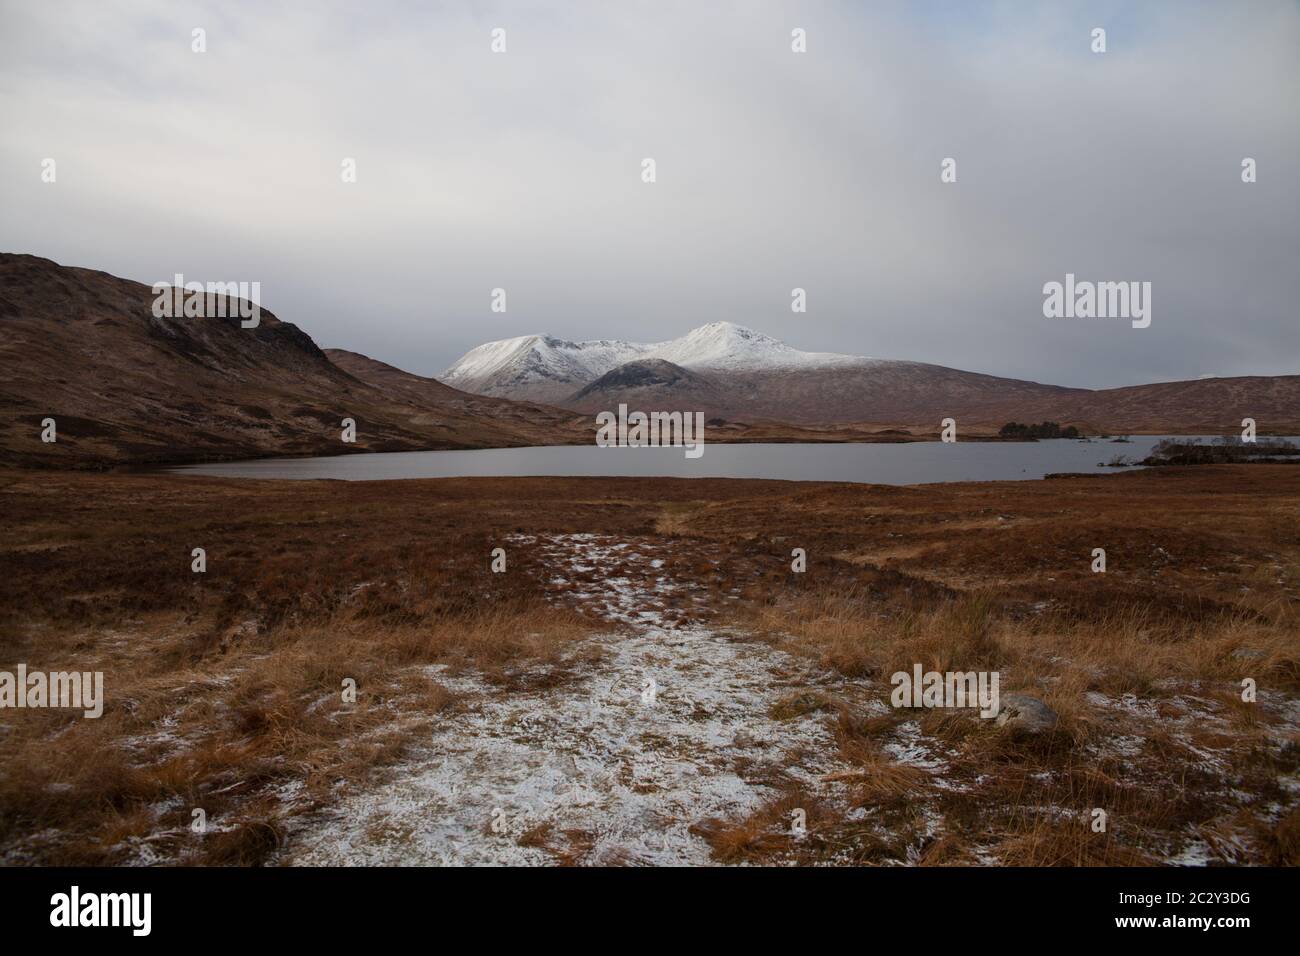 Montañas cubiertas de nieve en la distancia con un lago, Glencoe Escocia Foto de stock